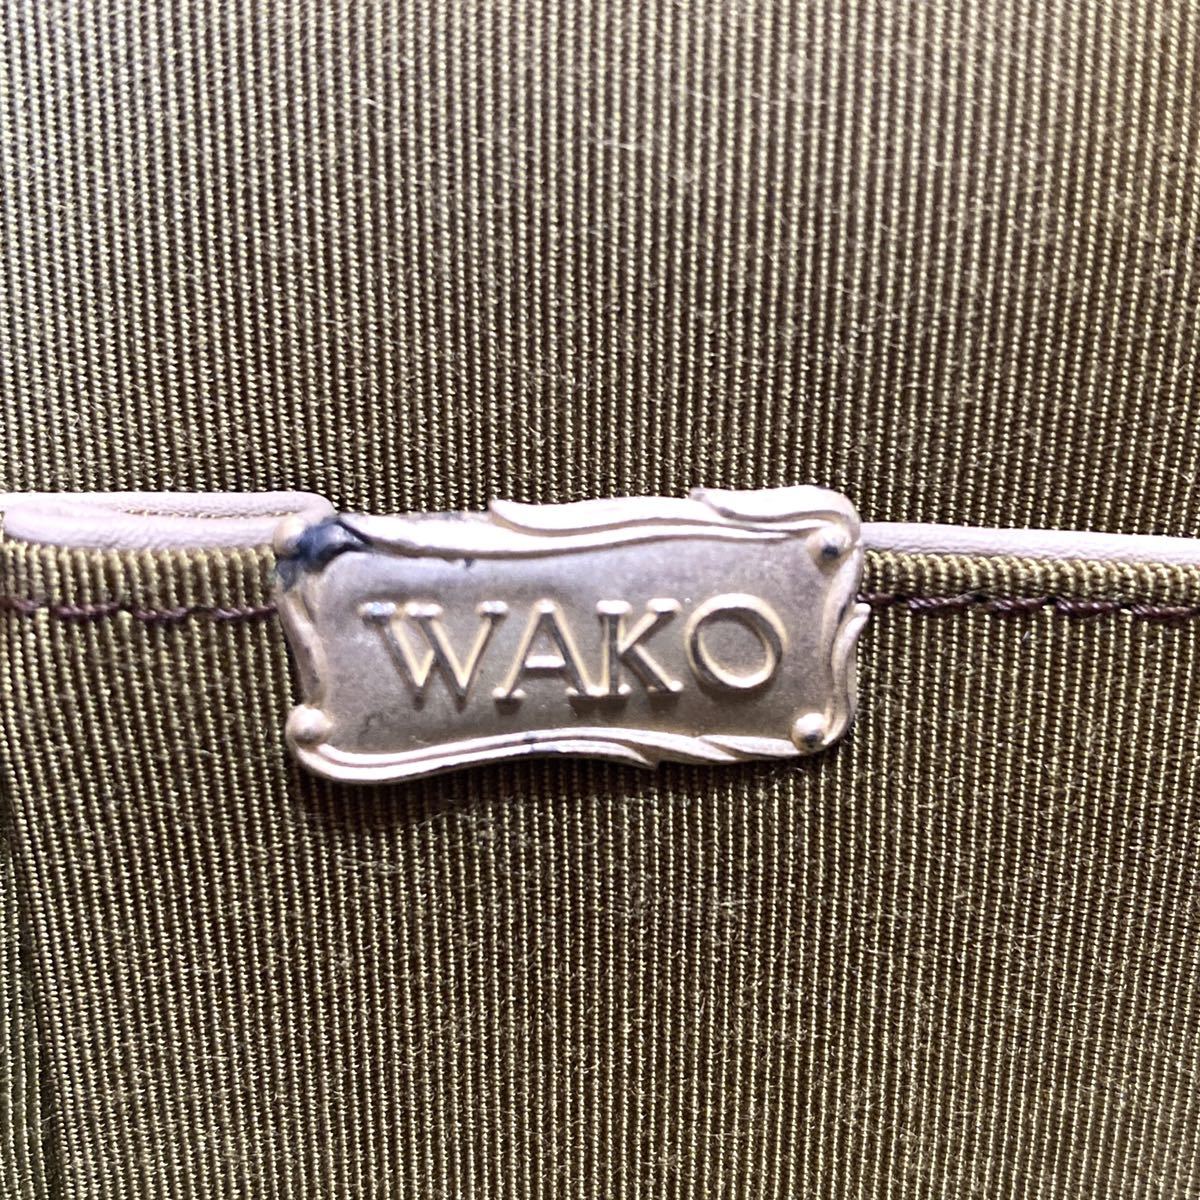 美品 WAKO ワコウ 銀座 和光 グレージュ シルバー金具 がま口 フォーマル レザー ハンドバッグ トートバッグ ショルダーバッグ 1